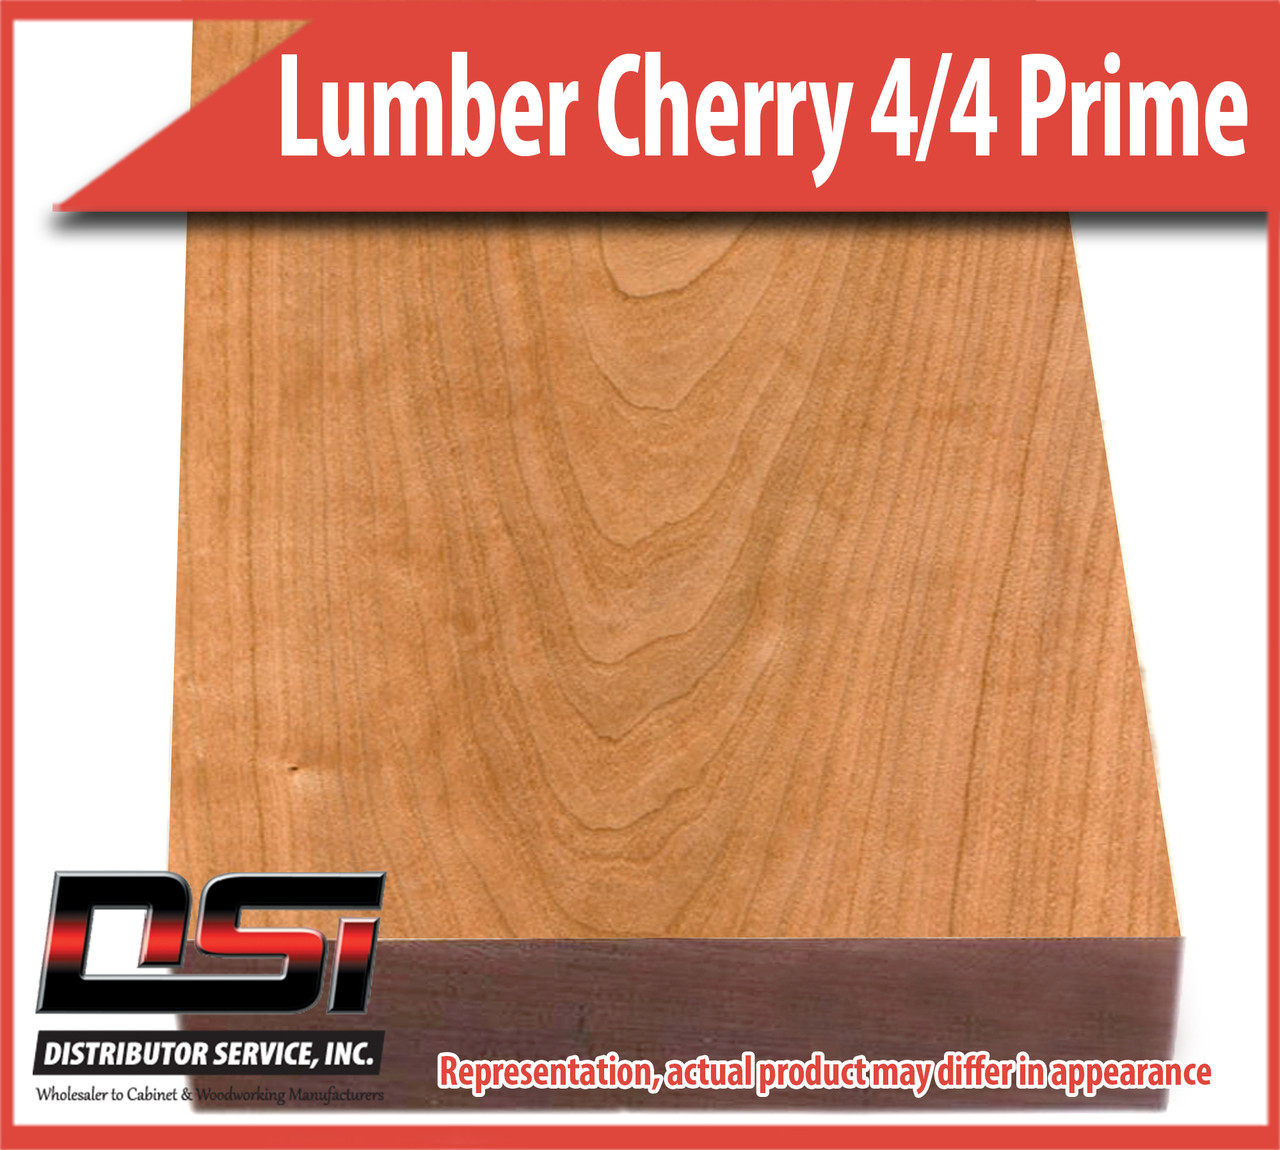 Domestic Hardwood Lumber Cherry 4/4 Prime 13/16" S2S 9'-10' SLR1E